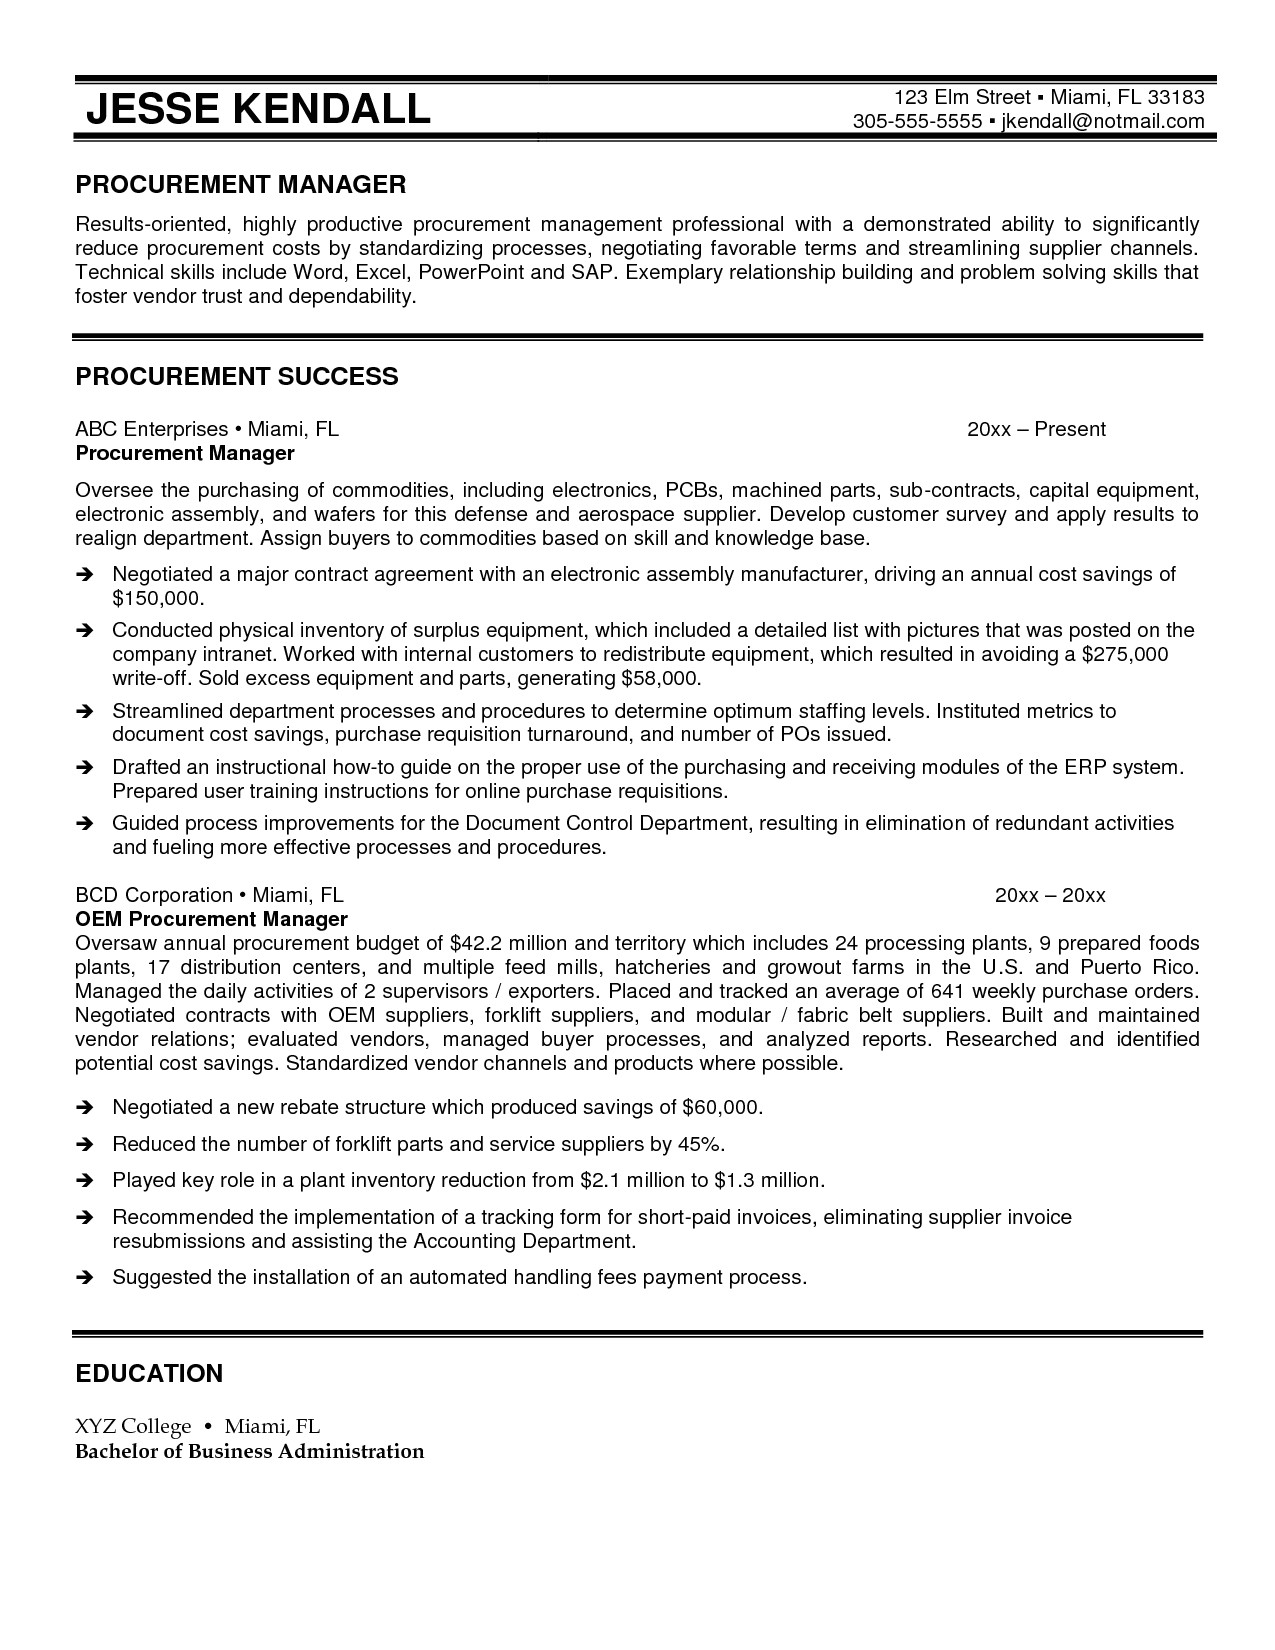 Sample Resume for Procurement Officer Sample Resume for Procurement Officer Resume Ideas